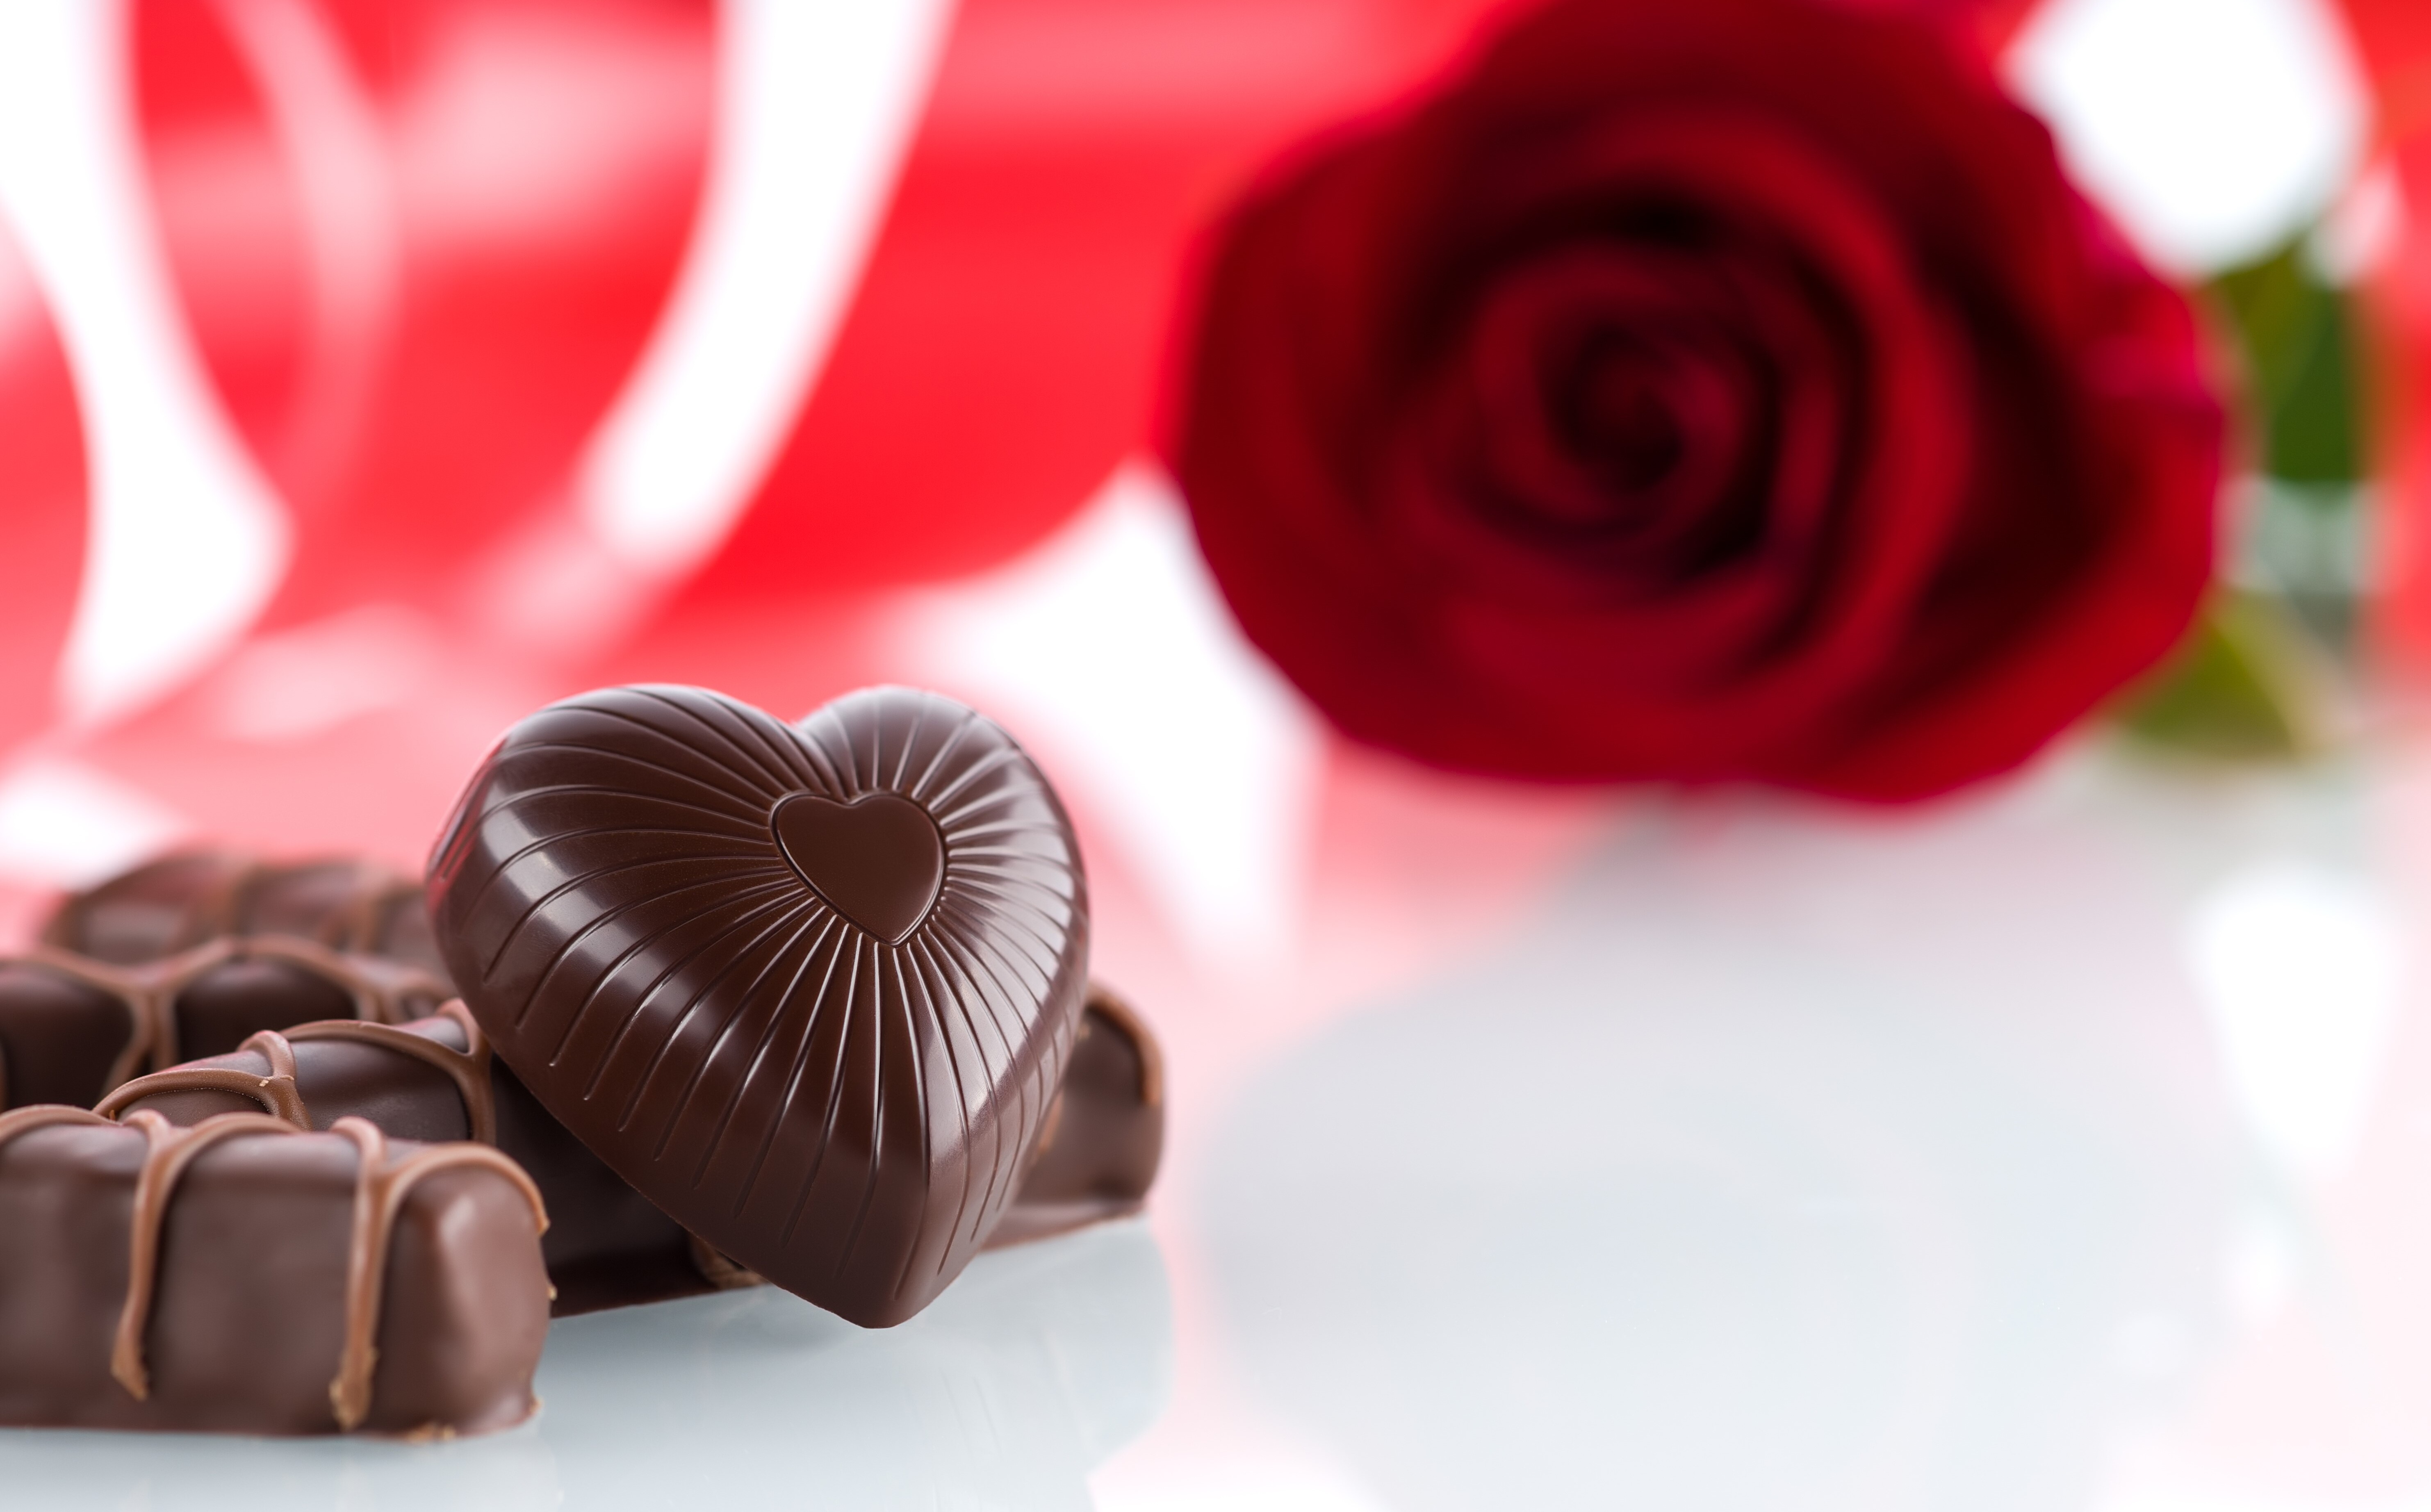 Special ganz im Zeichen der Rose und Schokolade. Die wohl schönsten Liebesbeweise.